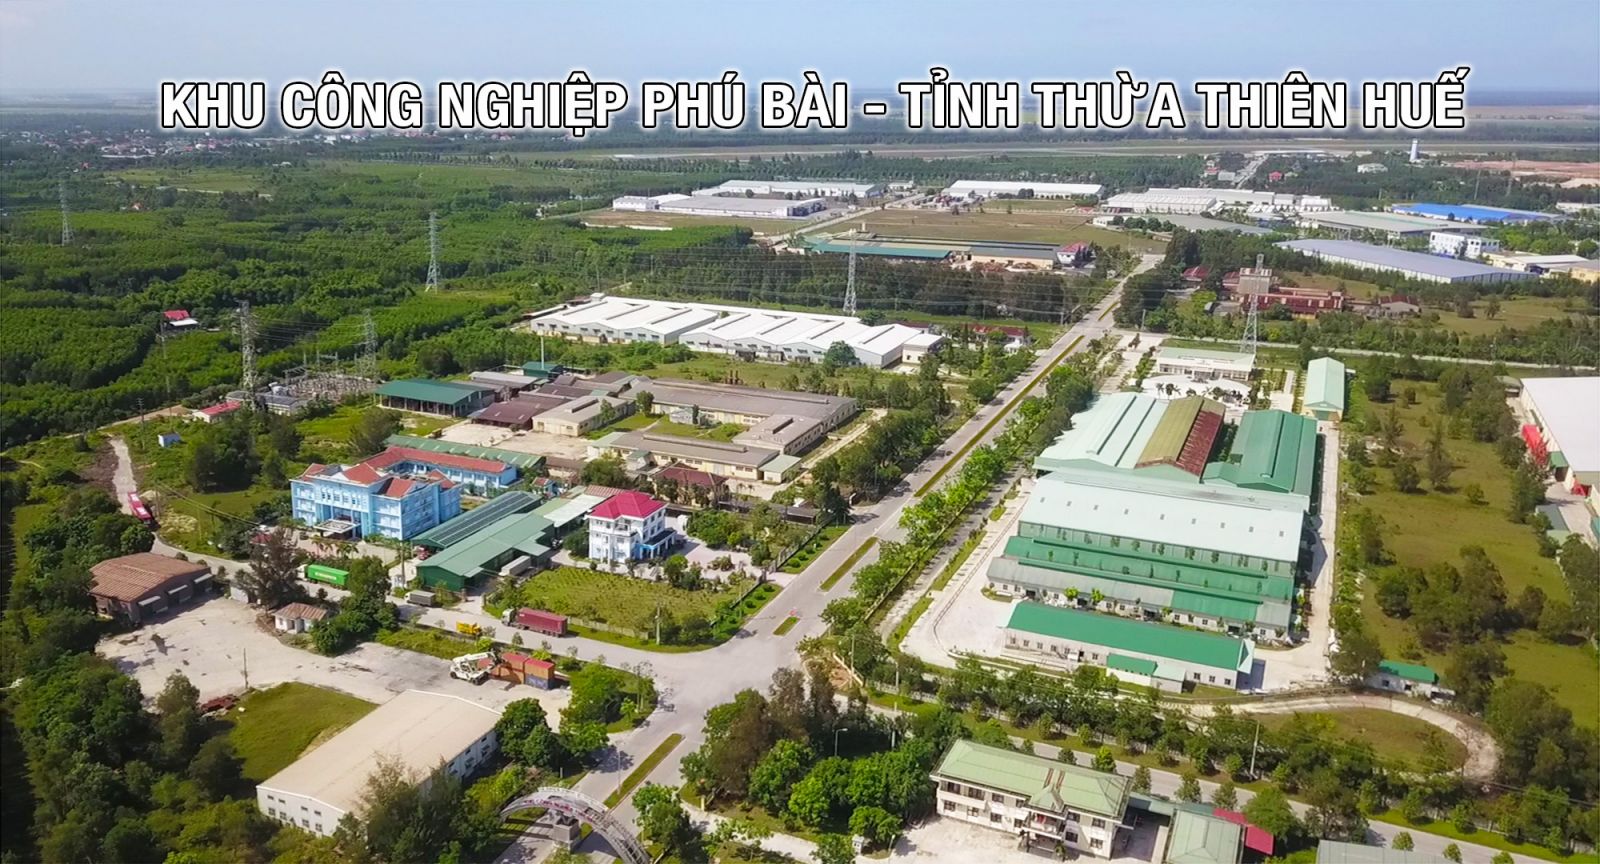 Cận cảnh khu công nghiệp đầu tiên tại tỉnh Thừa Thiên Huế - Khu công nghiệp Phú Bài I,II